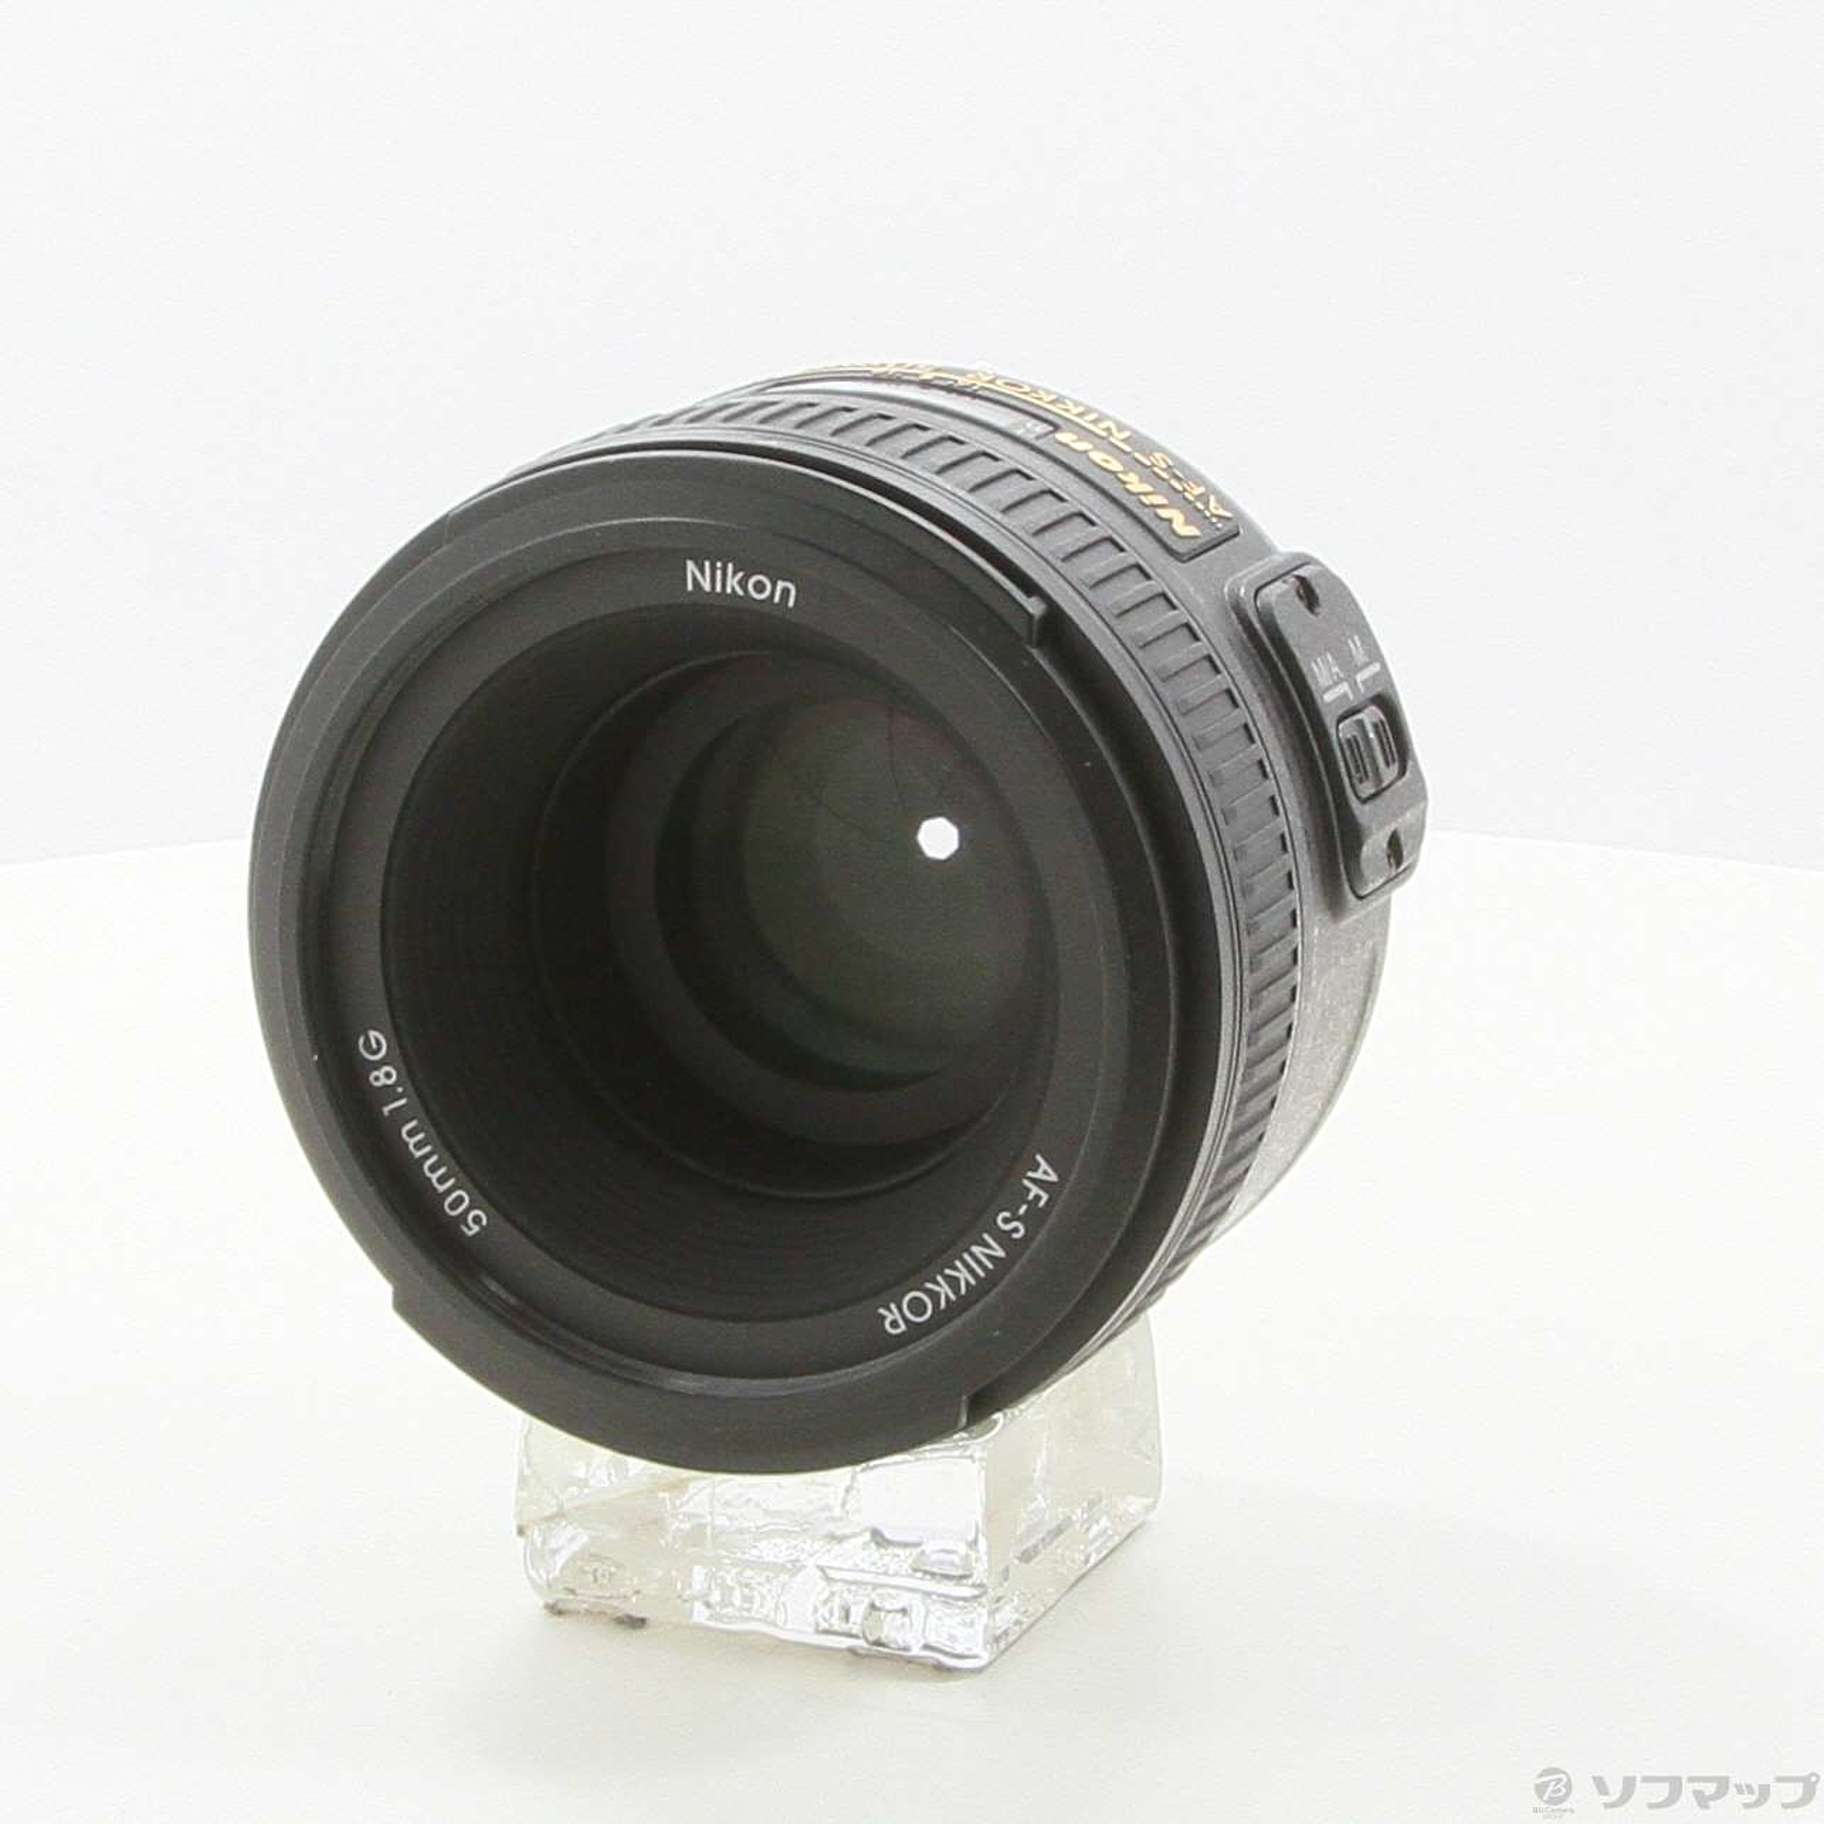 〔展示品〕 Nikon AF-S NIKKOR 50mm F1.8G (レンズ)